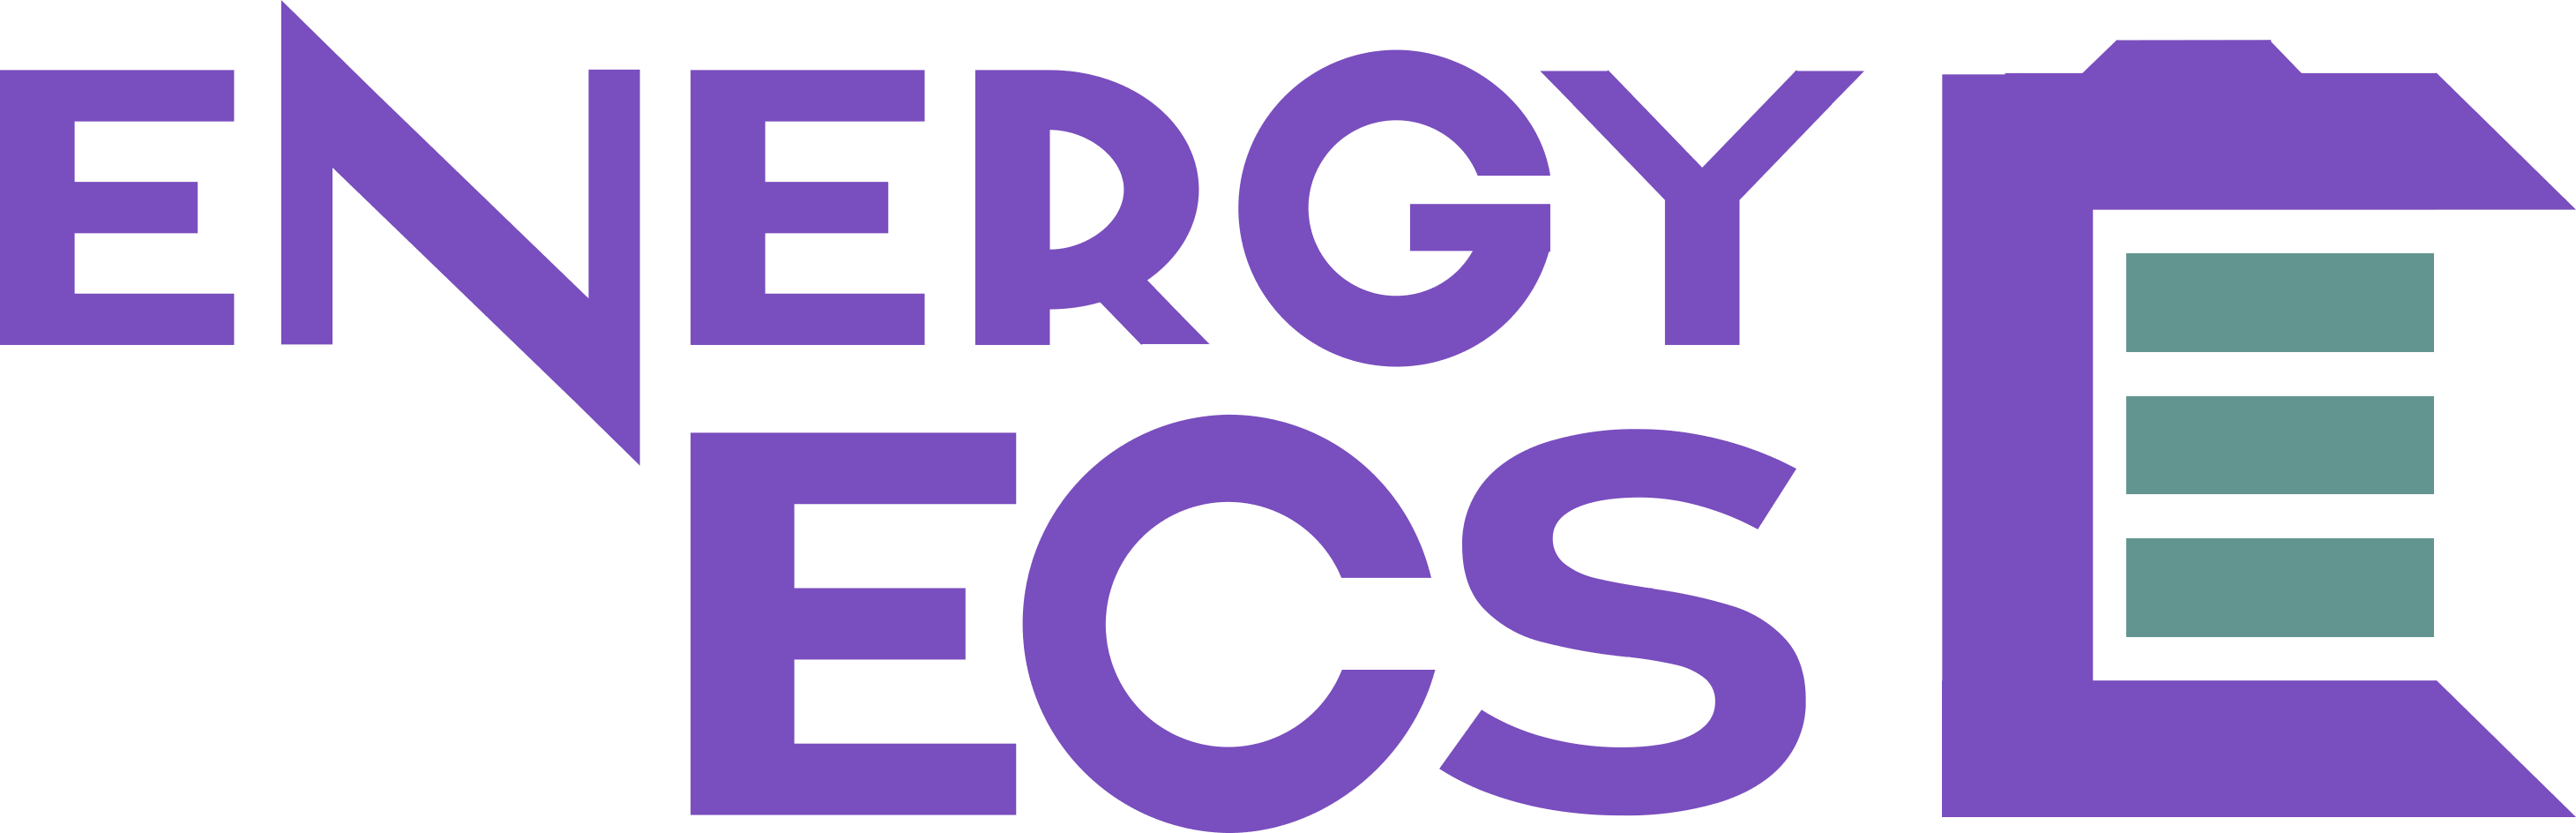 ENERGY ECS